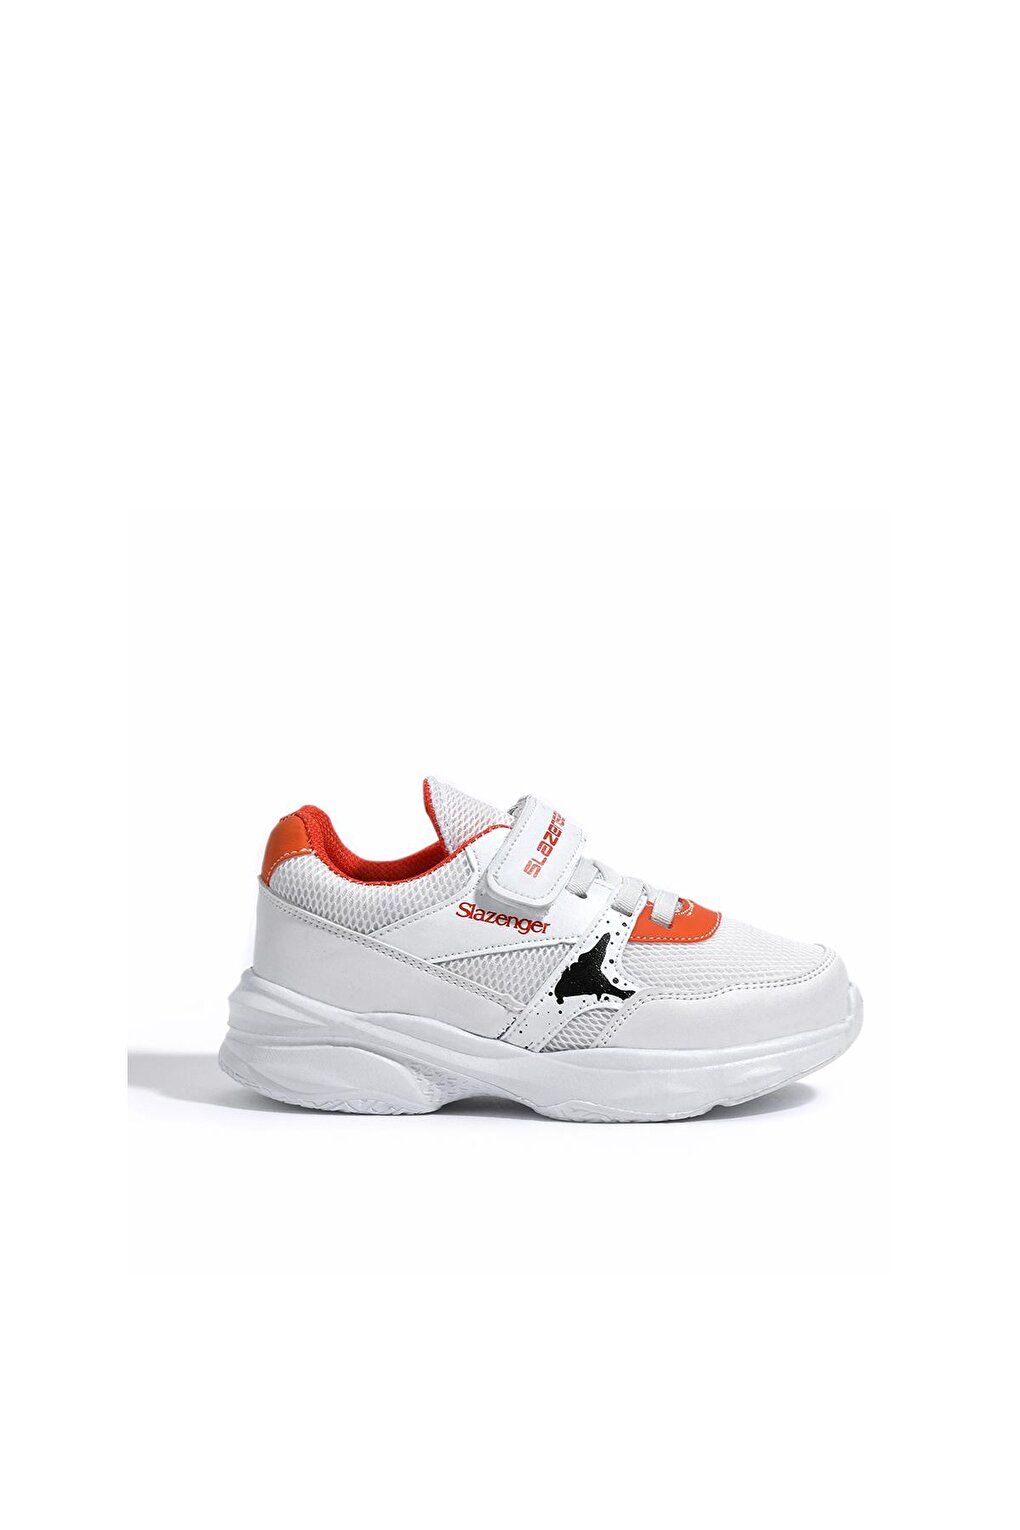 KUNTI Sneaker Обувь для мальчиков Белый/Оранжевый SLAZENGER комплект мебели бело оранжевый